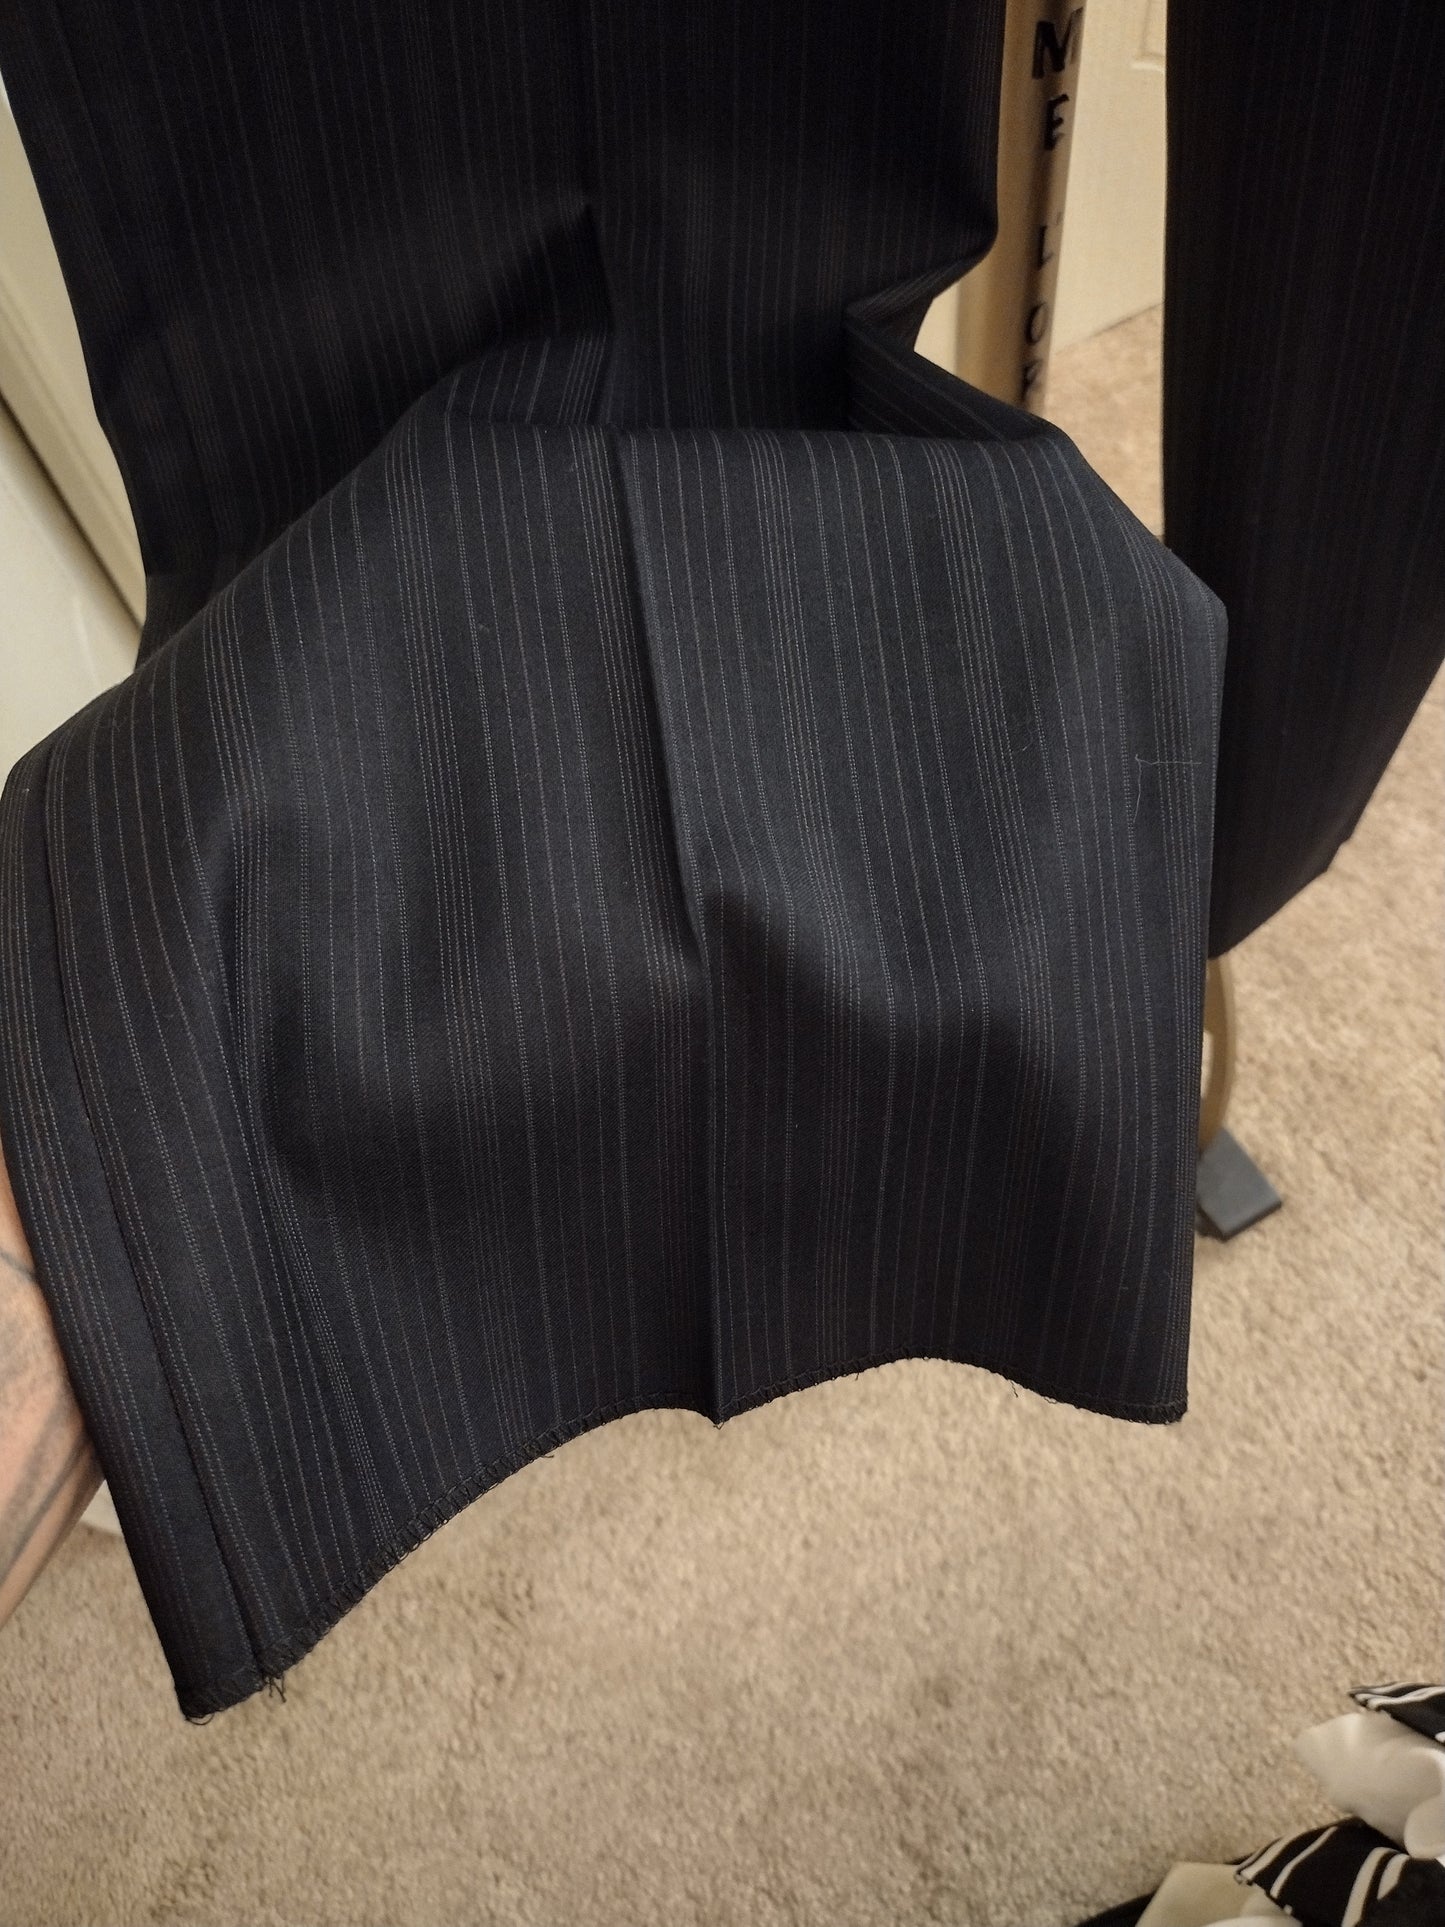 Authentic Gucci Men's 2 Piece Black & Grey Pinstripe Suit